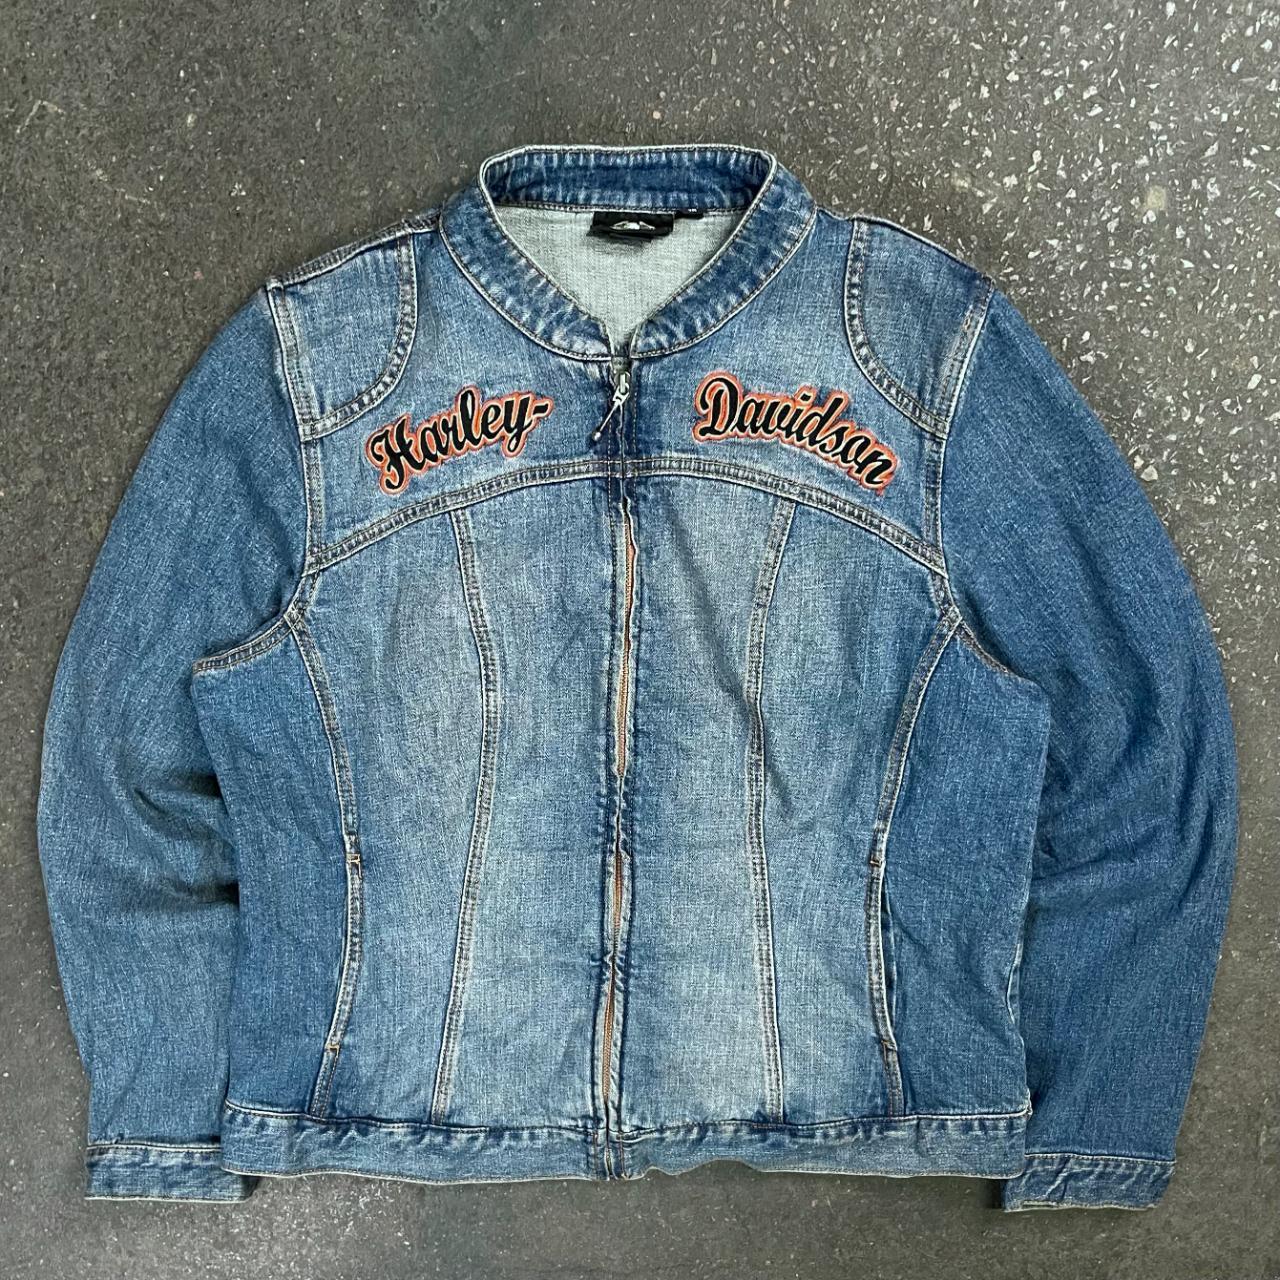 Harley Davidson biker jacket Vintage 90s/y2k Harley... - Depop